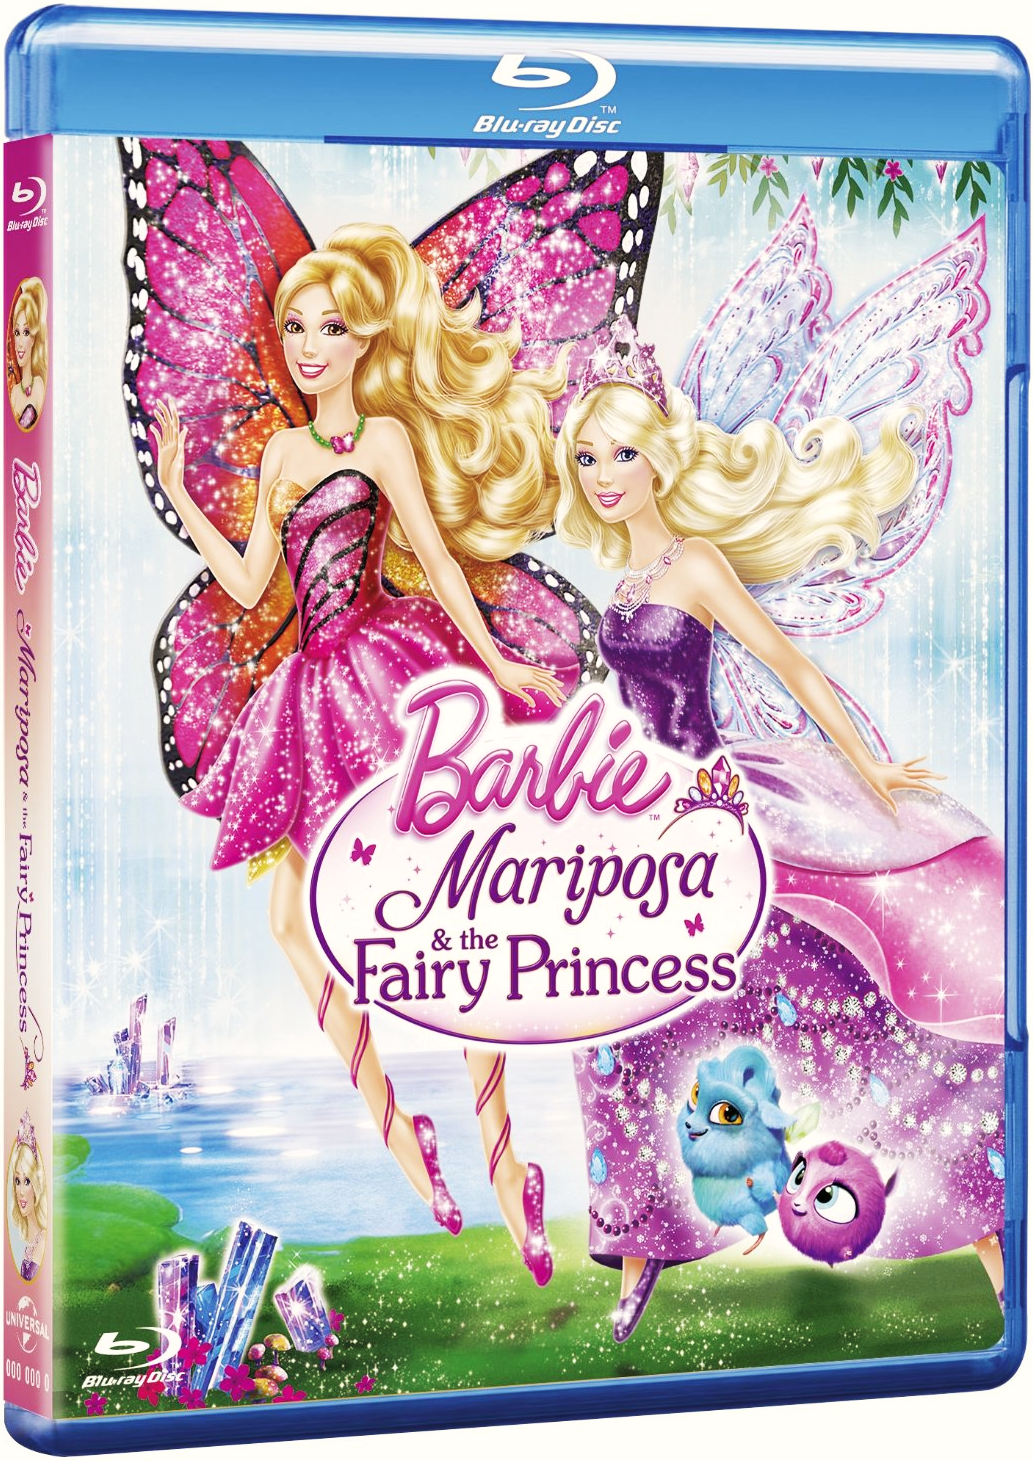 Filme Barbie Fairytopia: Mermaidia Online Dublado - Ano de 2018 ...